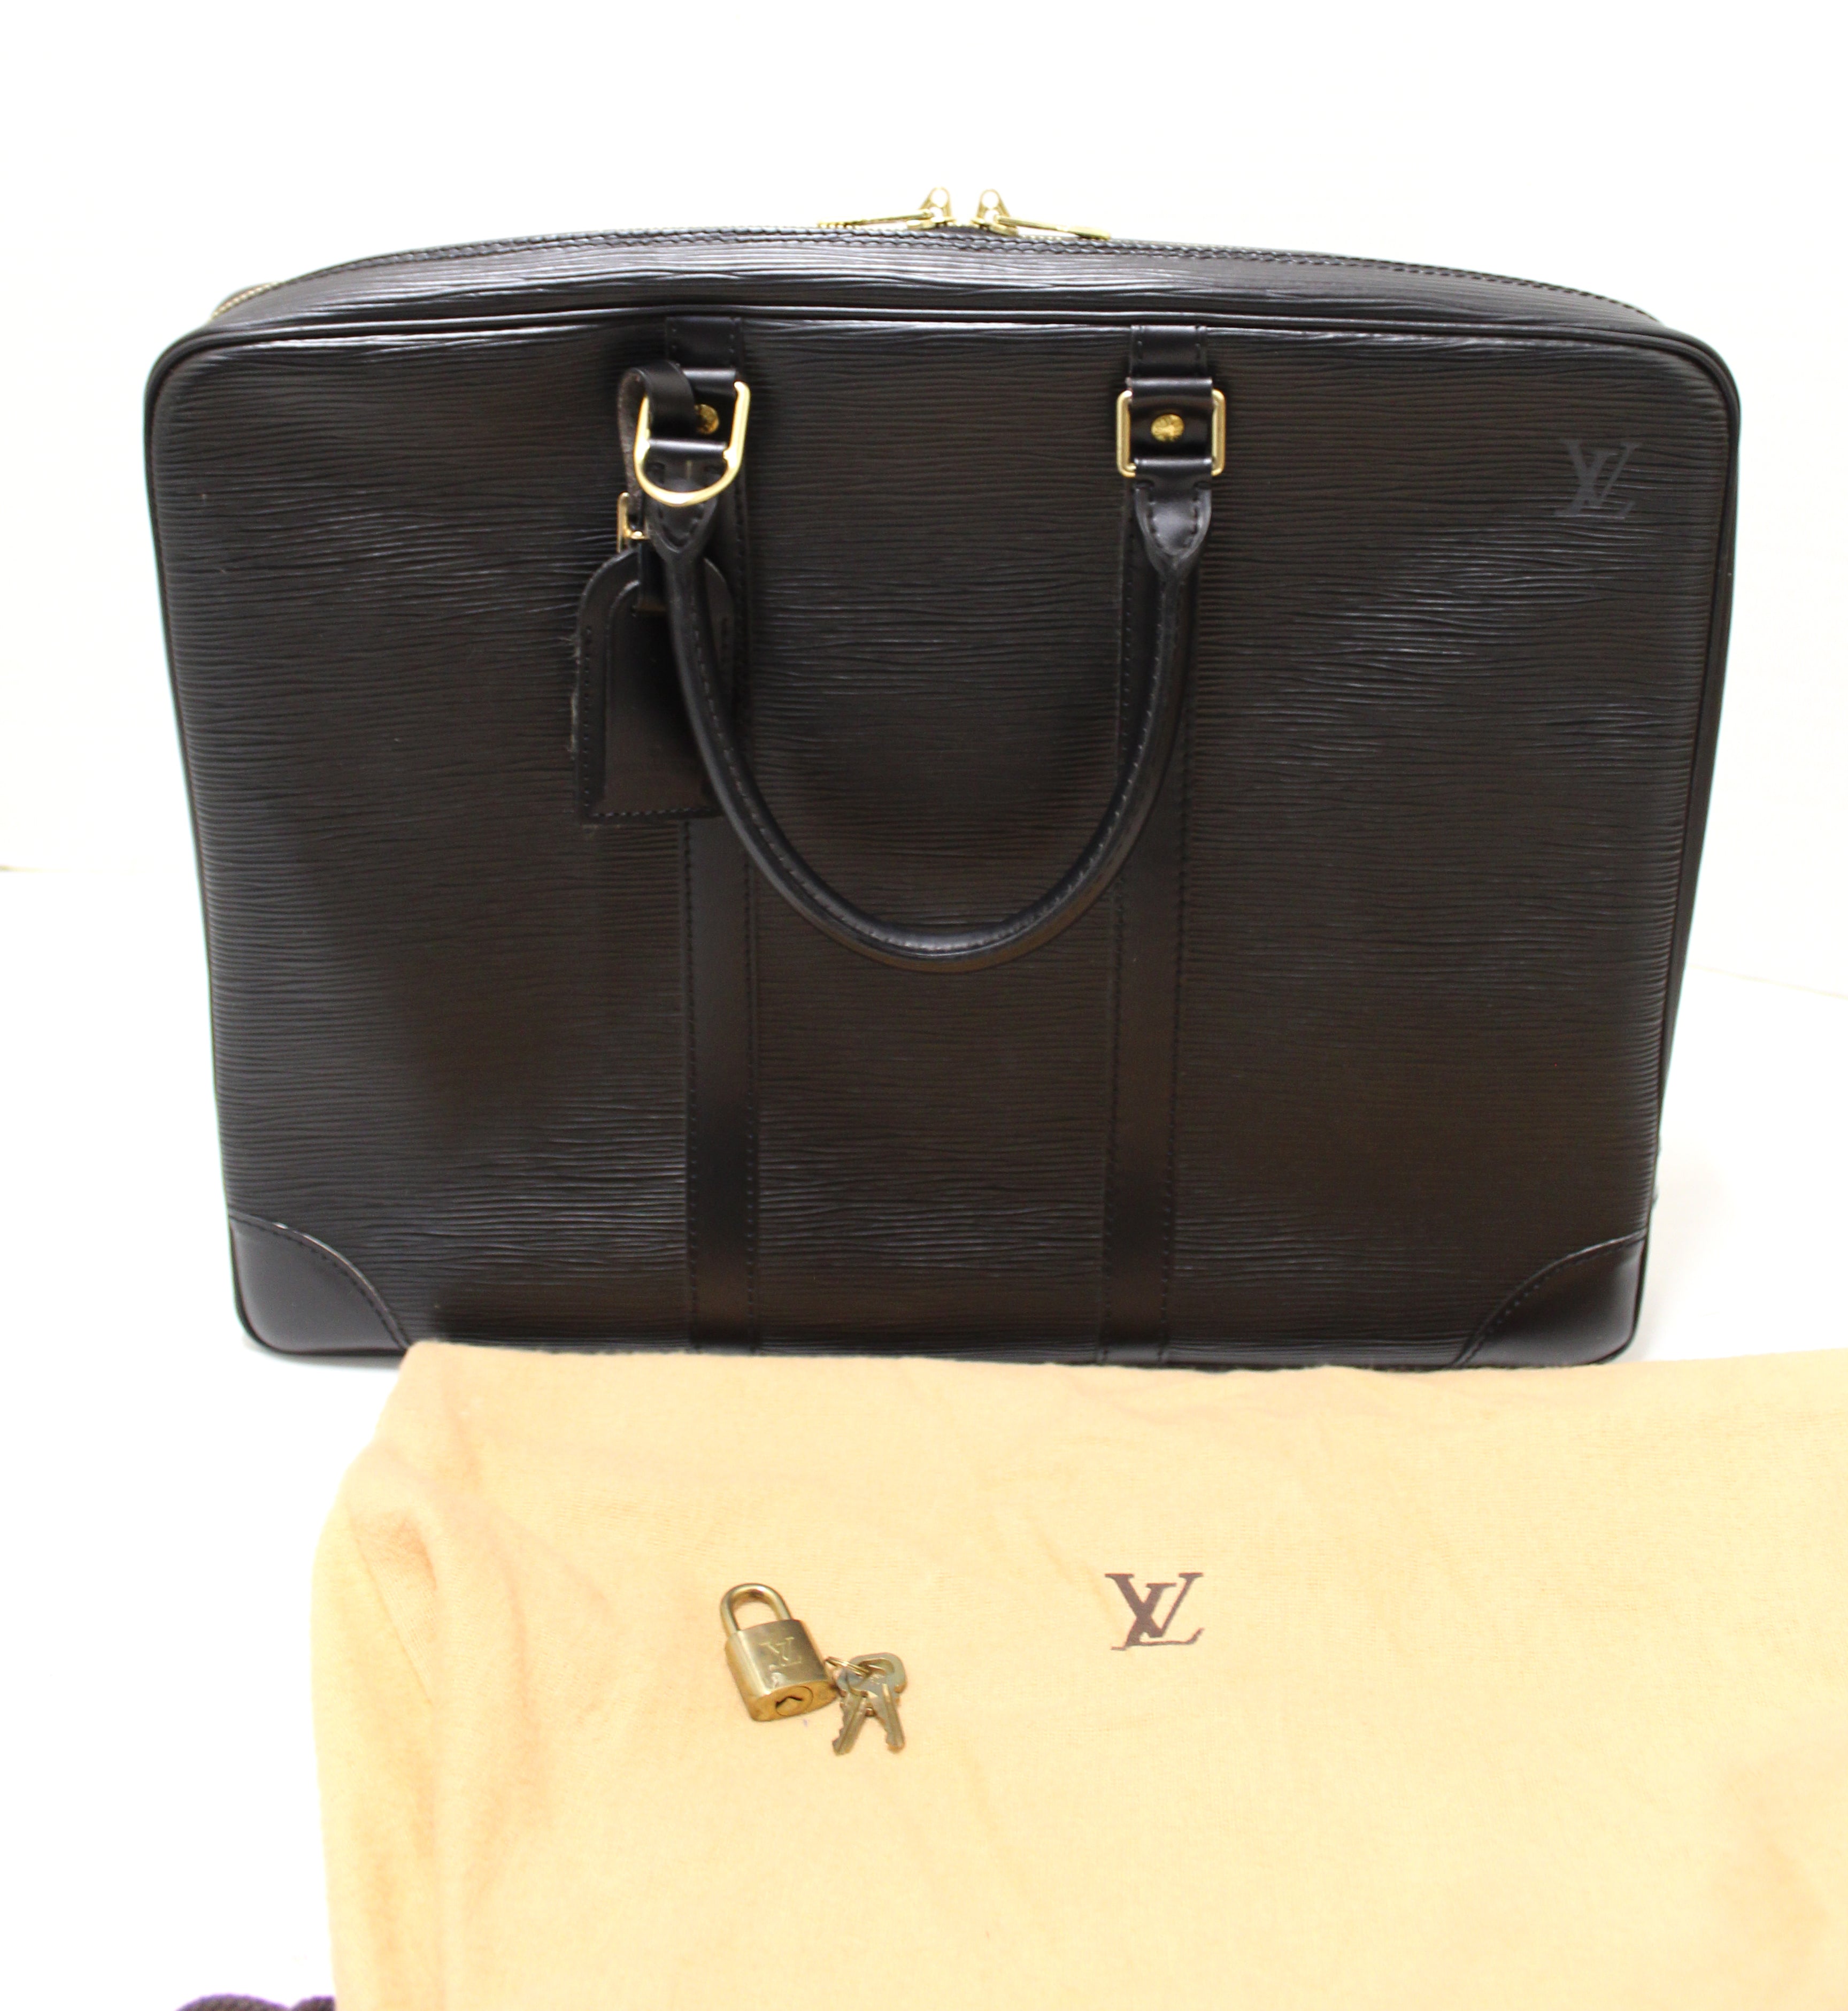 Authentic Louis Vuitton Epi leather briefcase